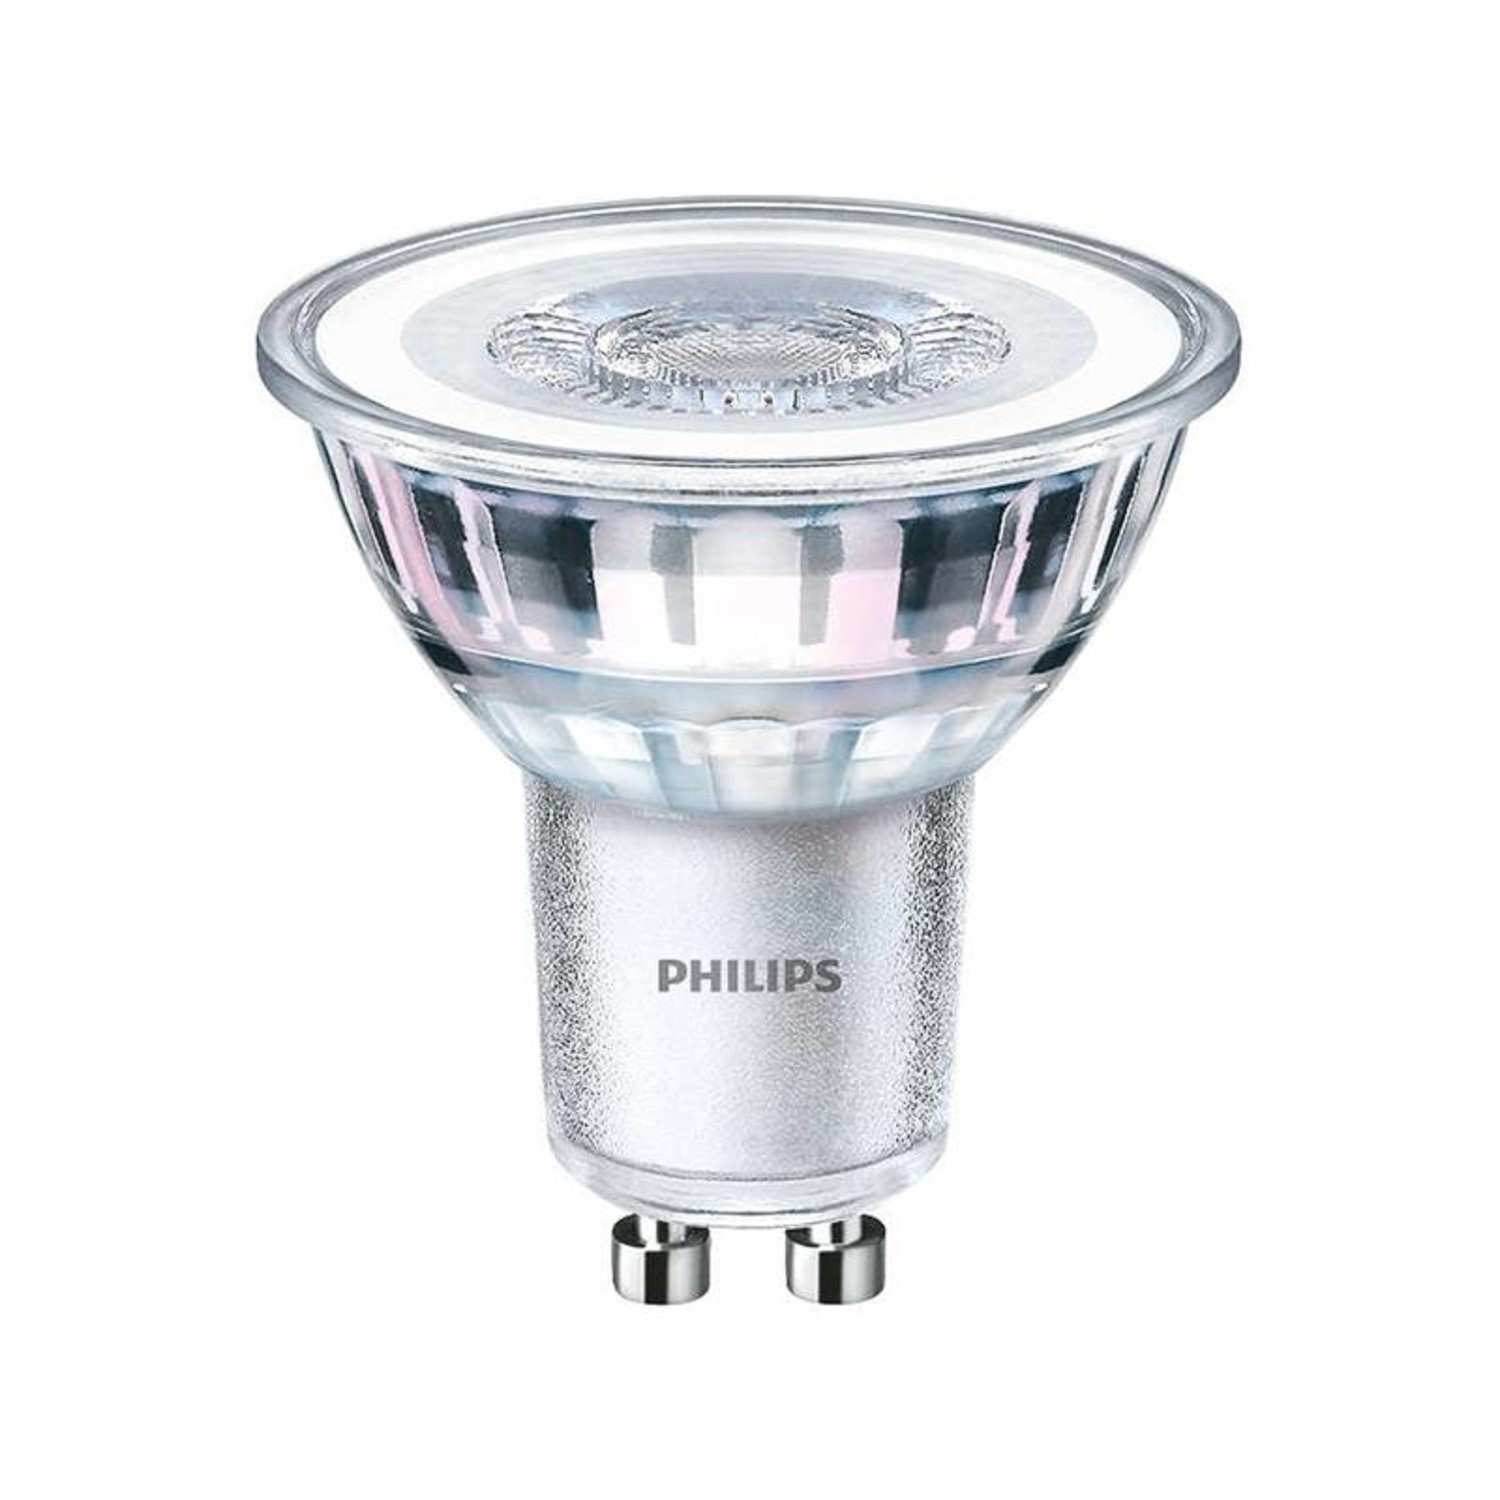 Ten einde raad Nederigheid Inwoner LED GU10 lamp 35-2,6 Watt Philips warmglow DIM - Lamponline.nl